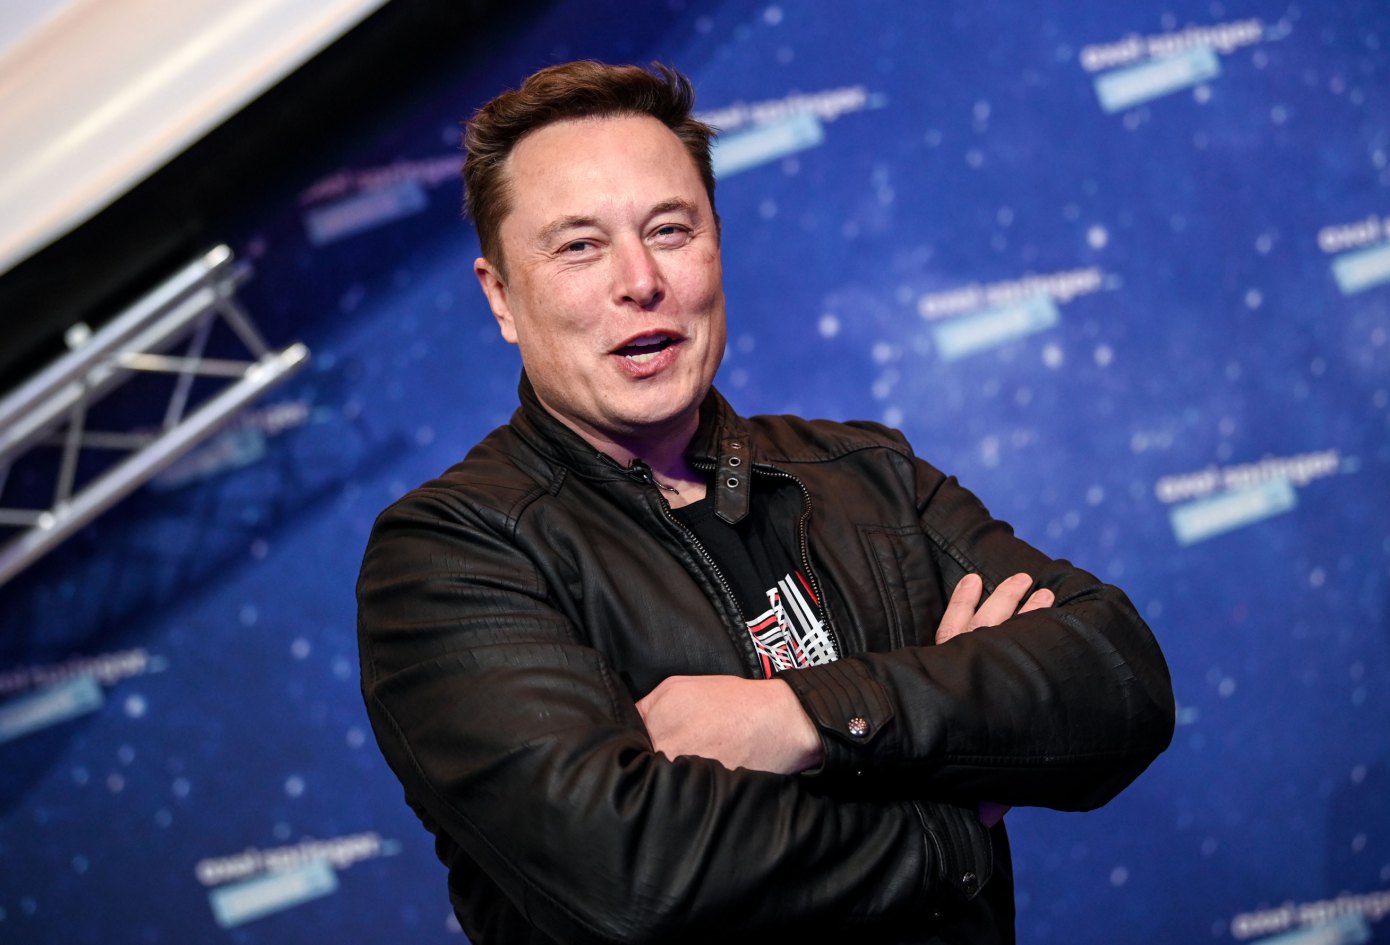 Elon Musk Twitter takeover